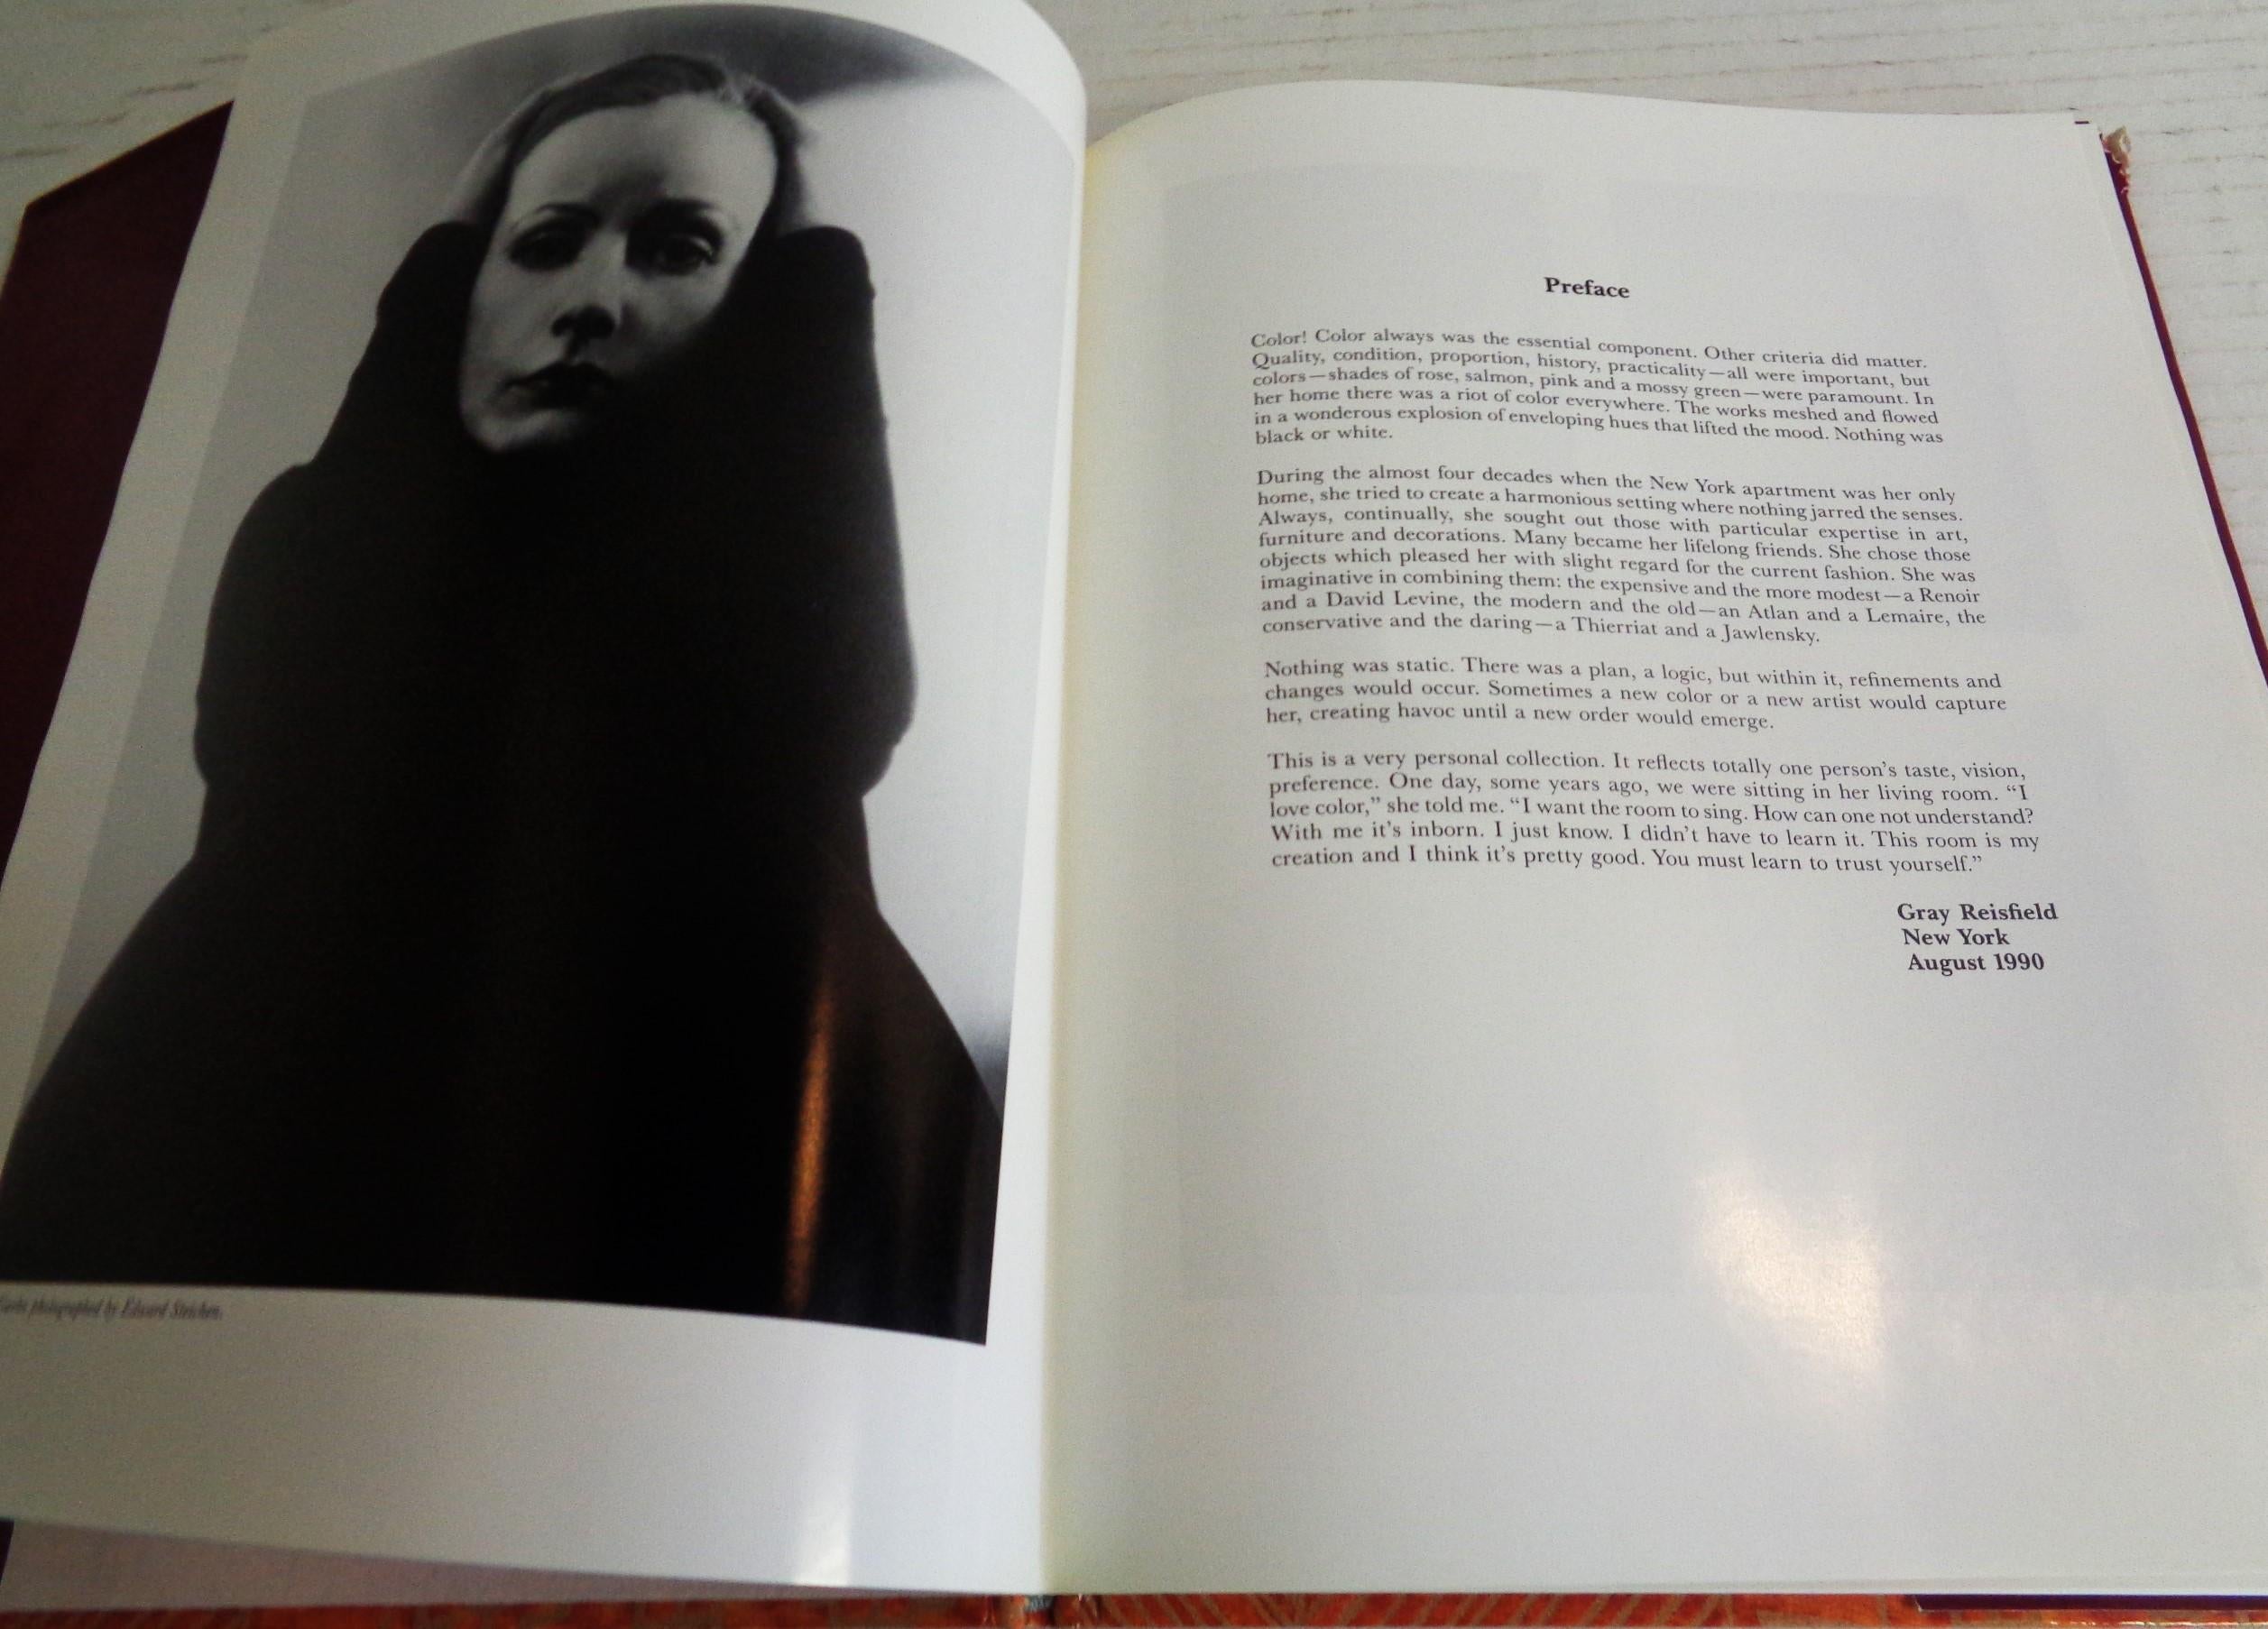 Fin du 20e siècle The Greta Garbo Collection Auction Catalog - 1990 Sotheby's - 1ère édition en vente